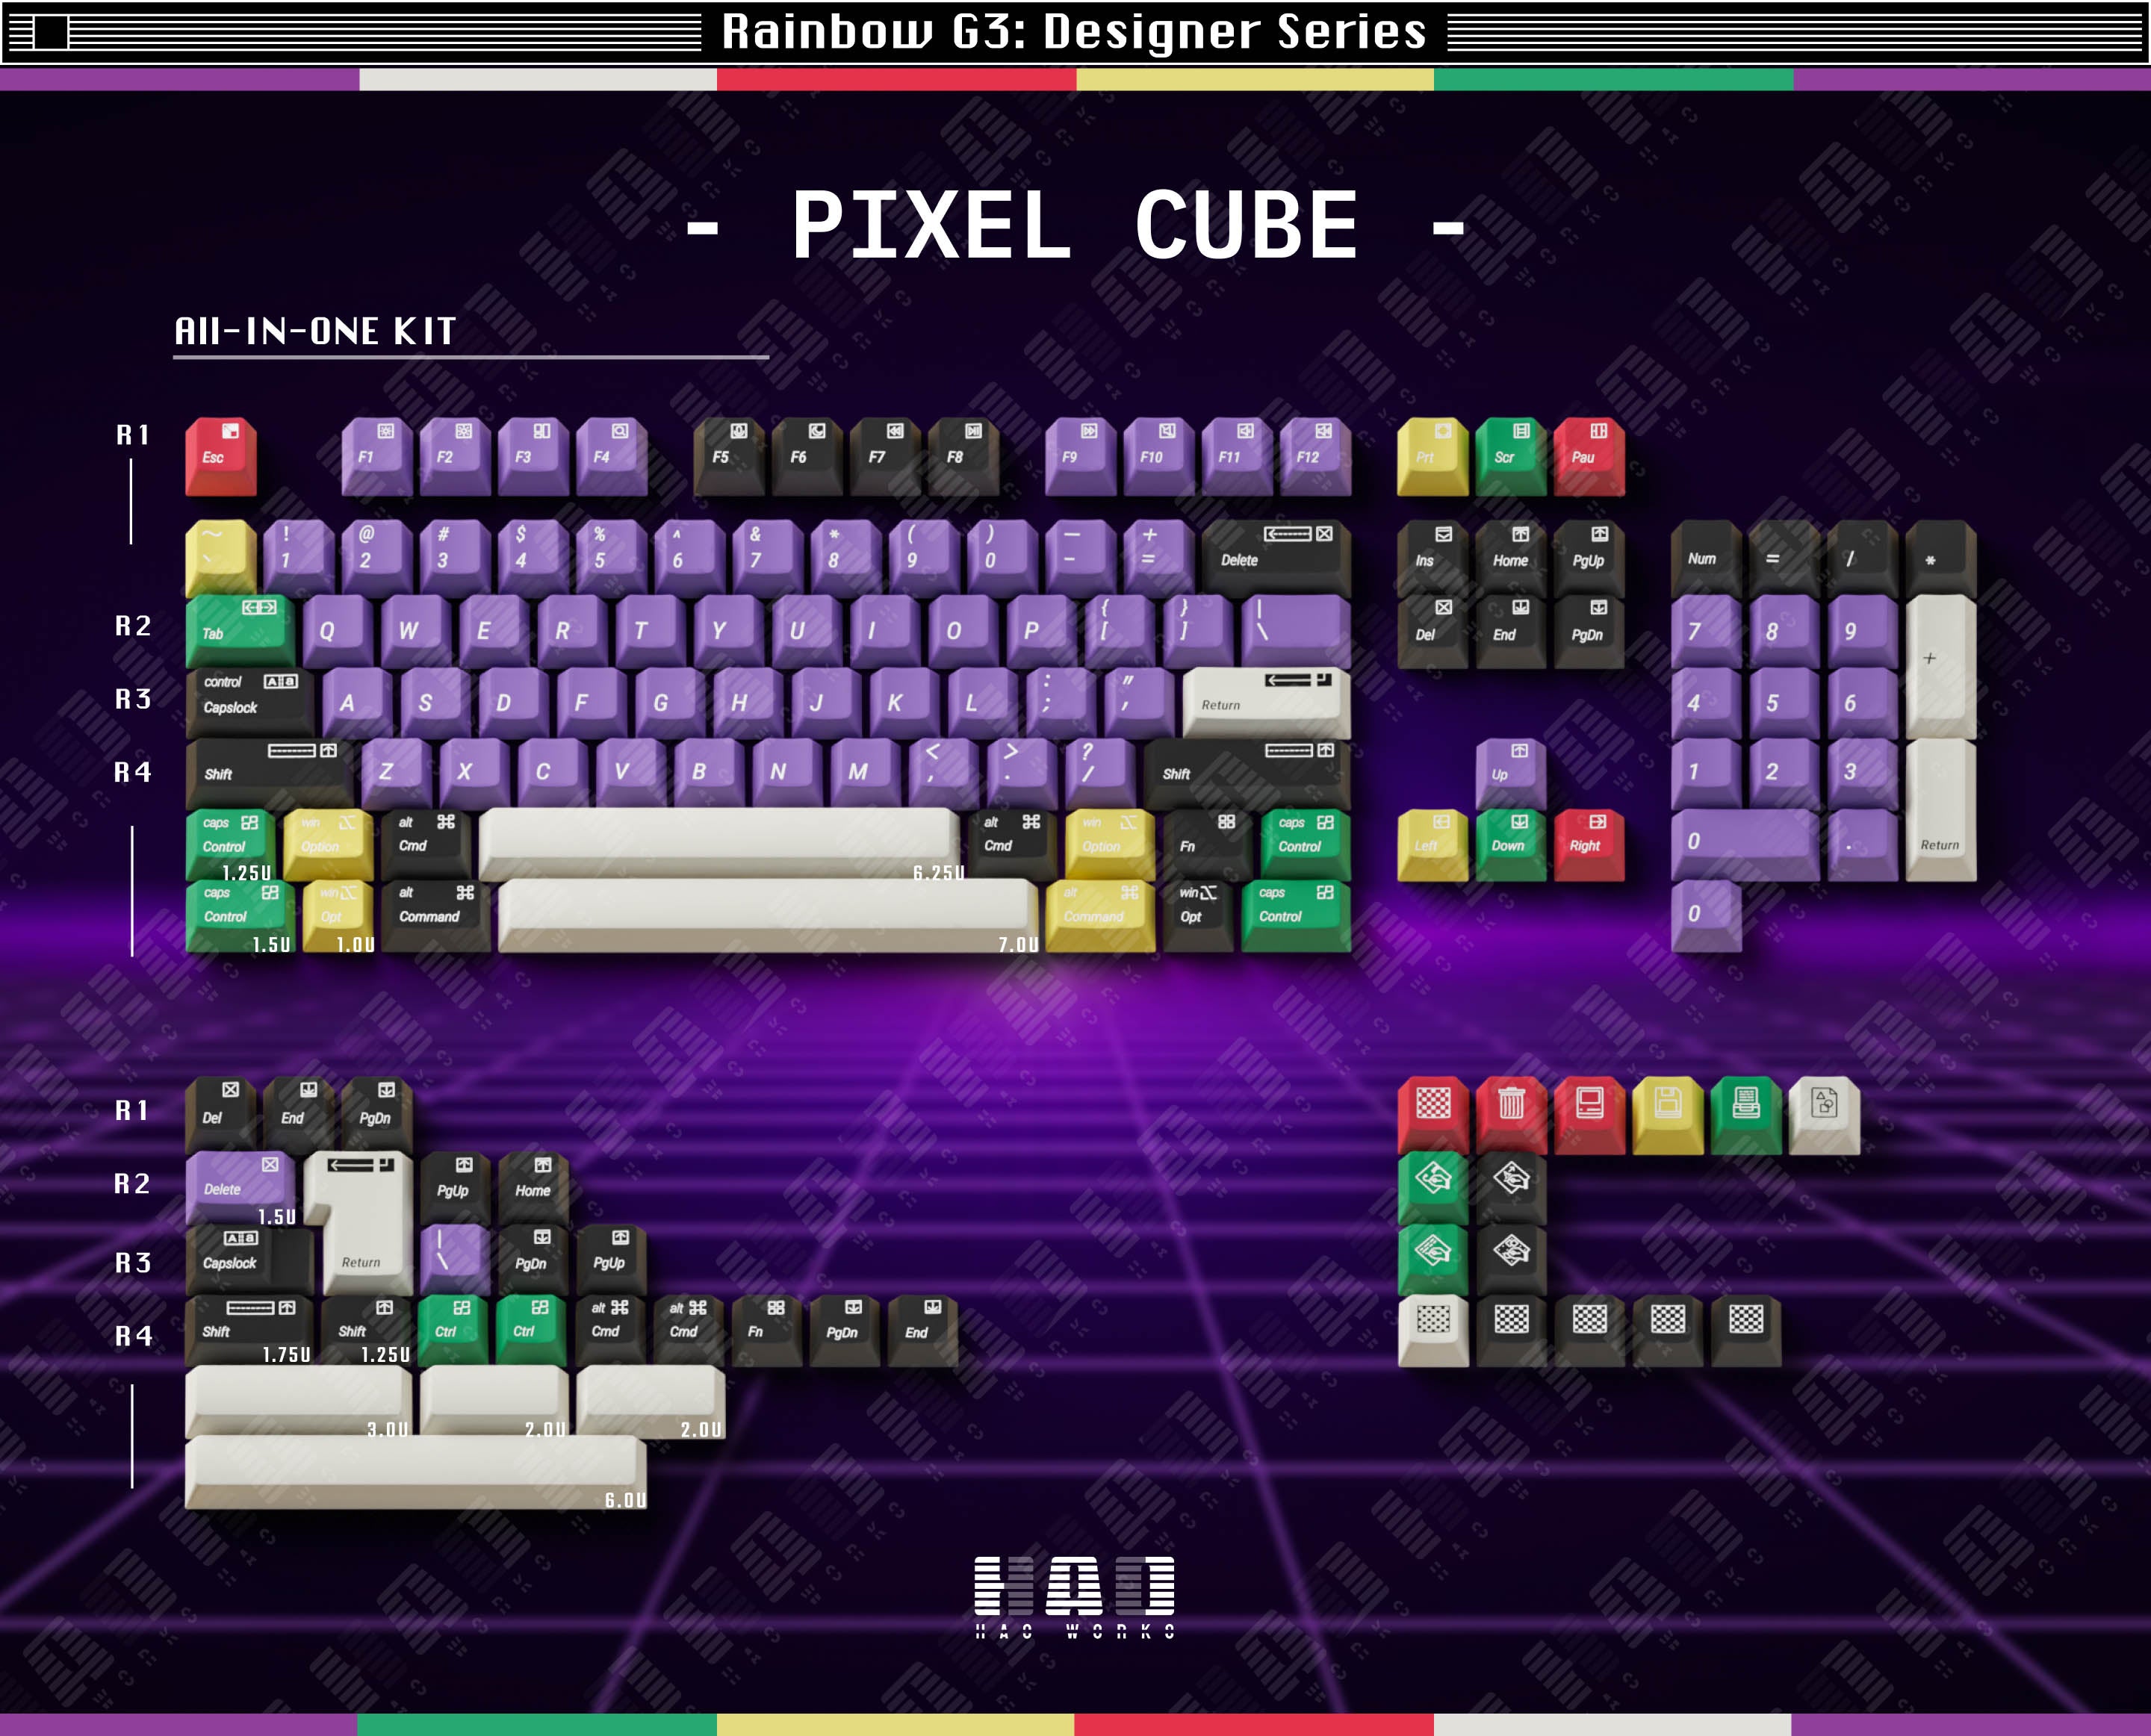 PixelCube ABS Cherry Profile Keycaps